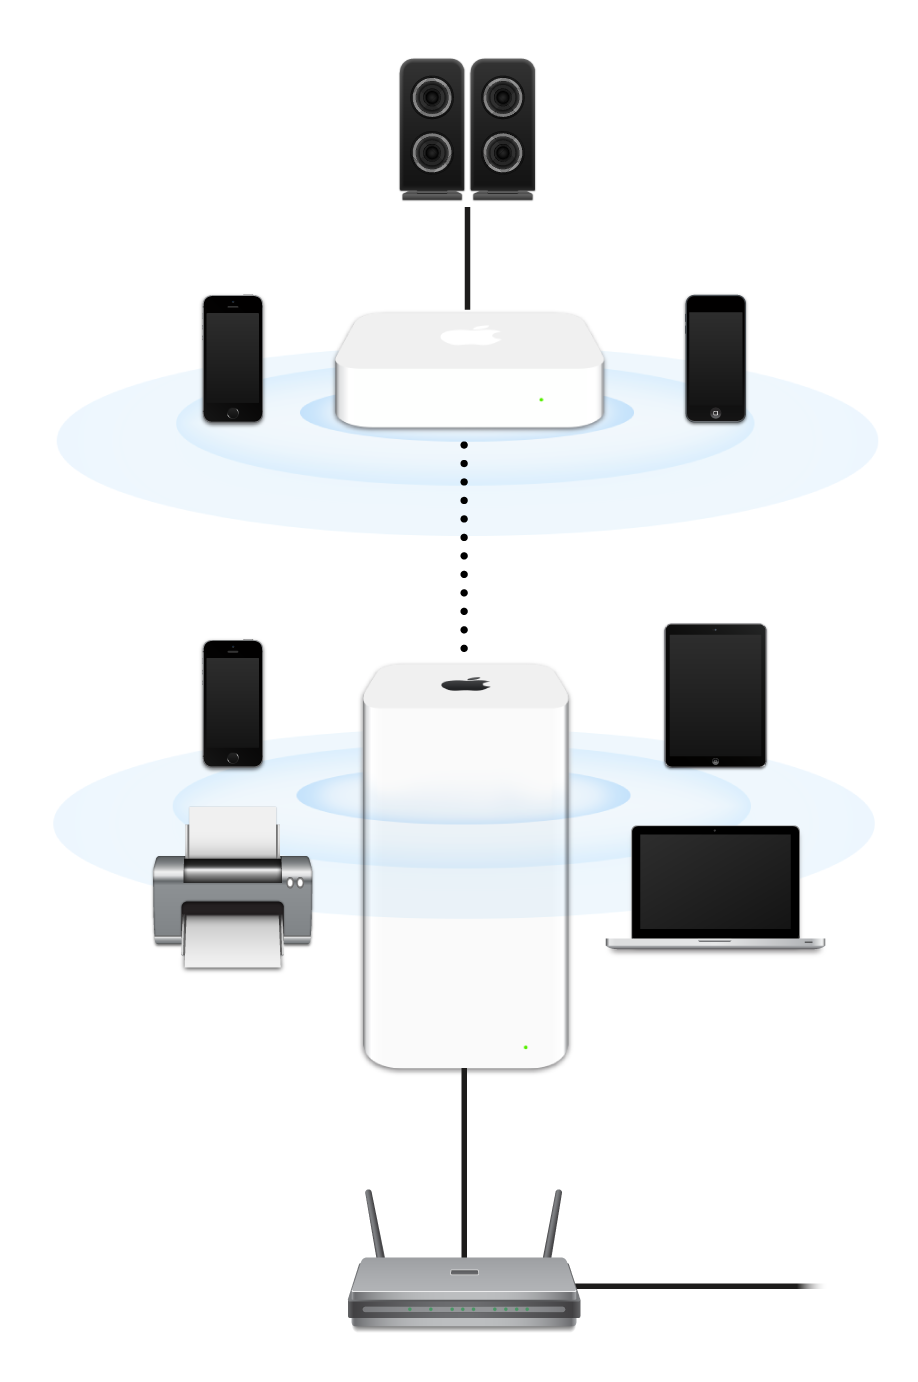 Jaringan yang diperluas, termasuk AirPort Extreme dan AirPort Express, yang terhubung ke modem dan mengirim ke berbagai perangkat.